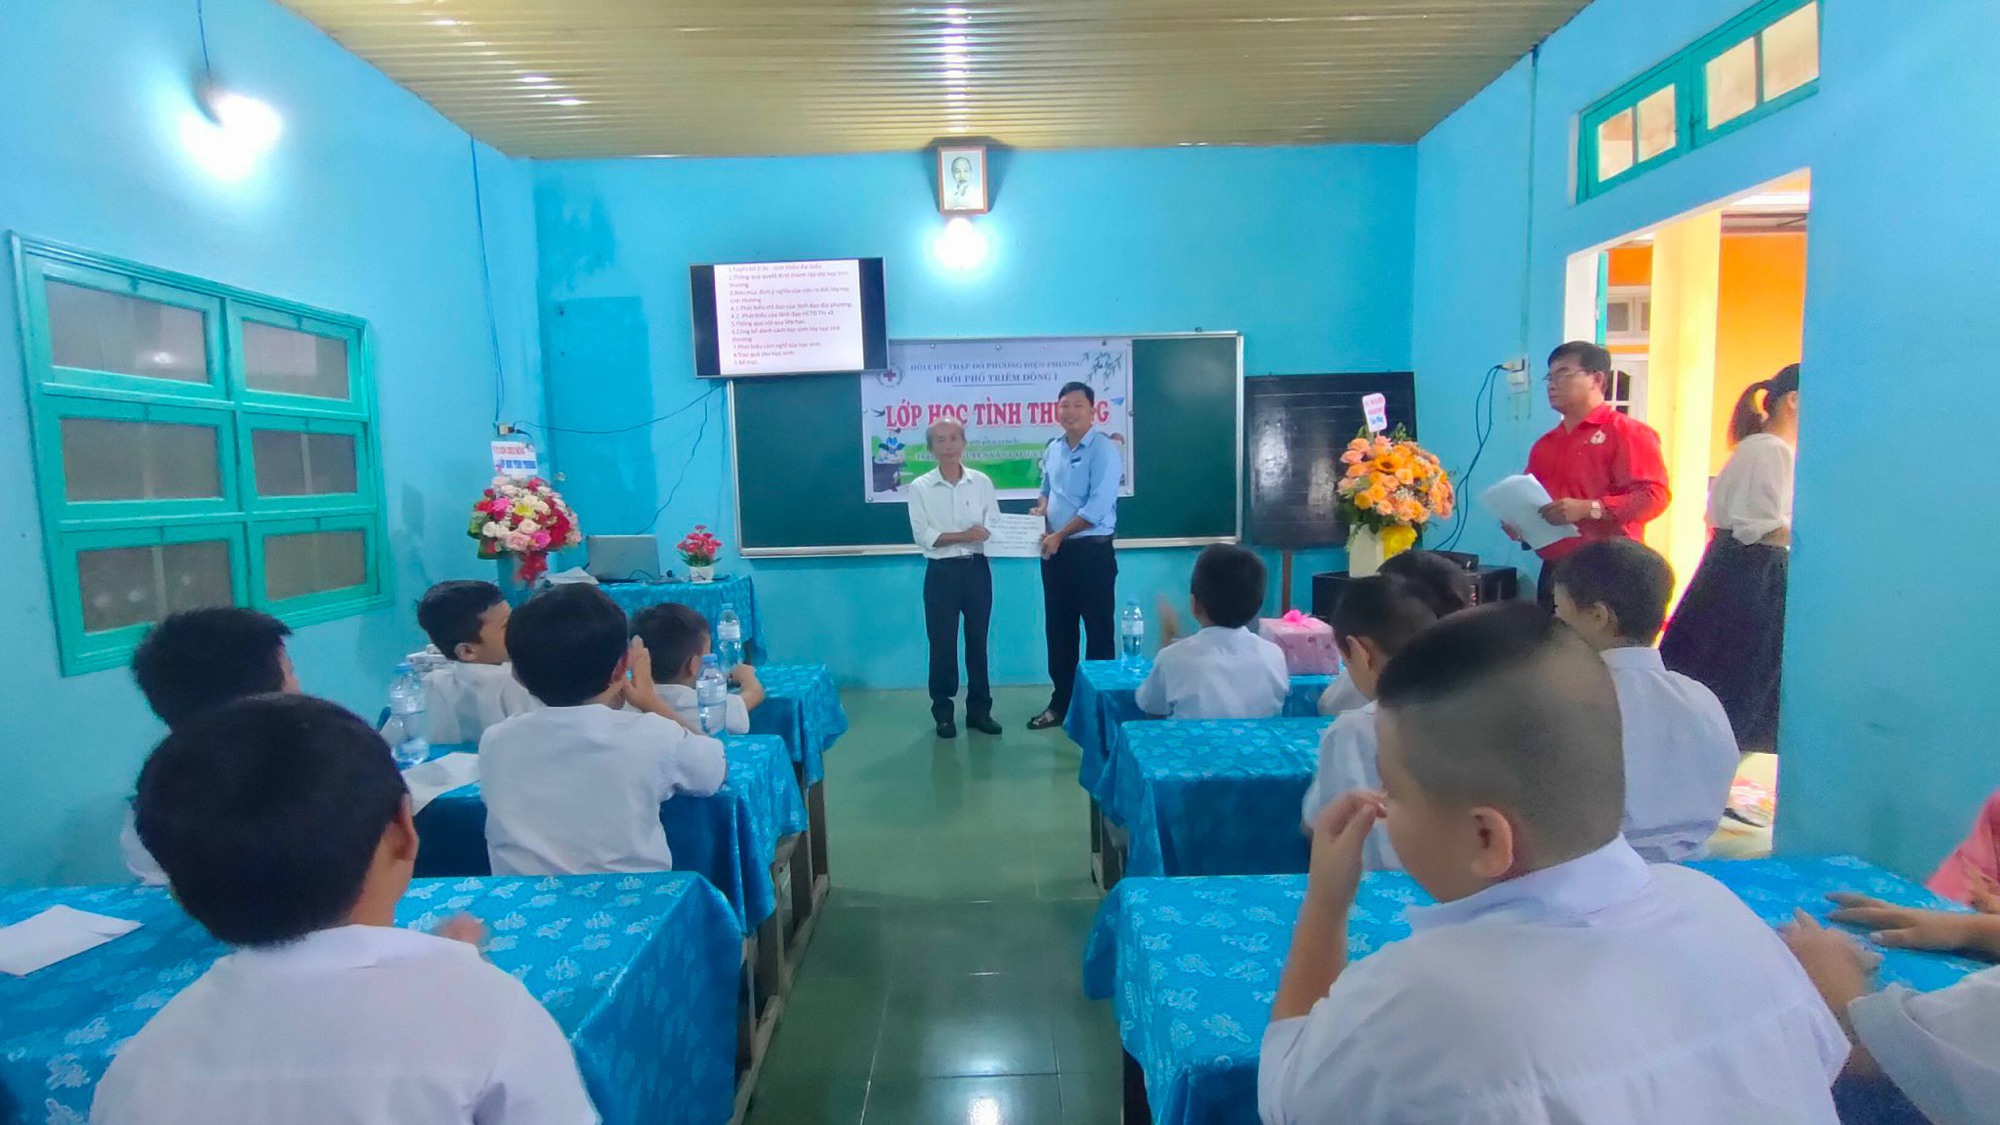 Quảng Nam: Hội Chữ thập đỏ phường Điện Phương ra mắt lớp học tình thương - Ảnh 1.